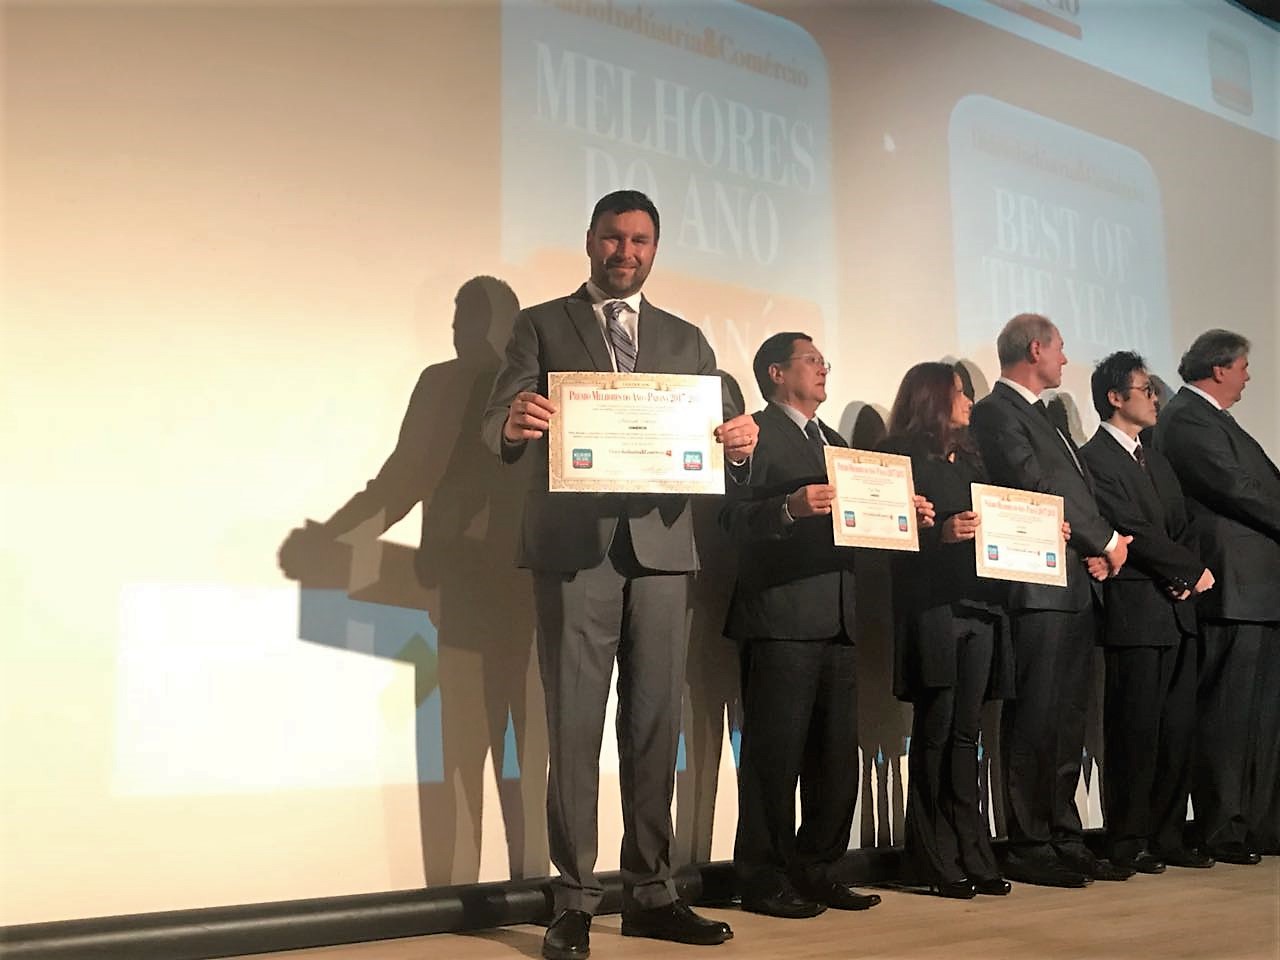 Foto 3 / Lojas MM recebe prêmio de Melhores do Ano 2017/2018